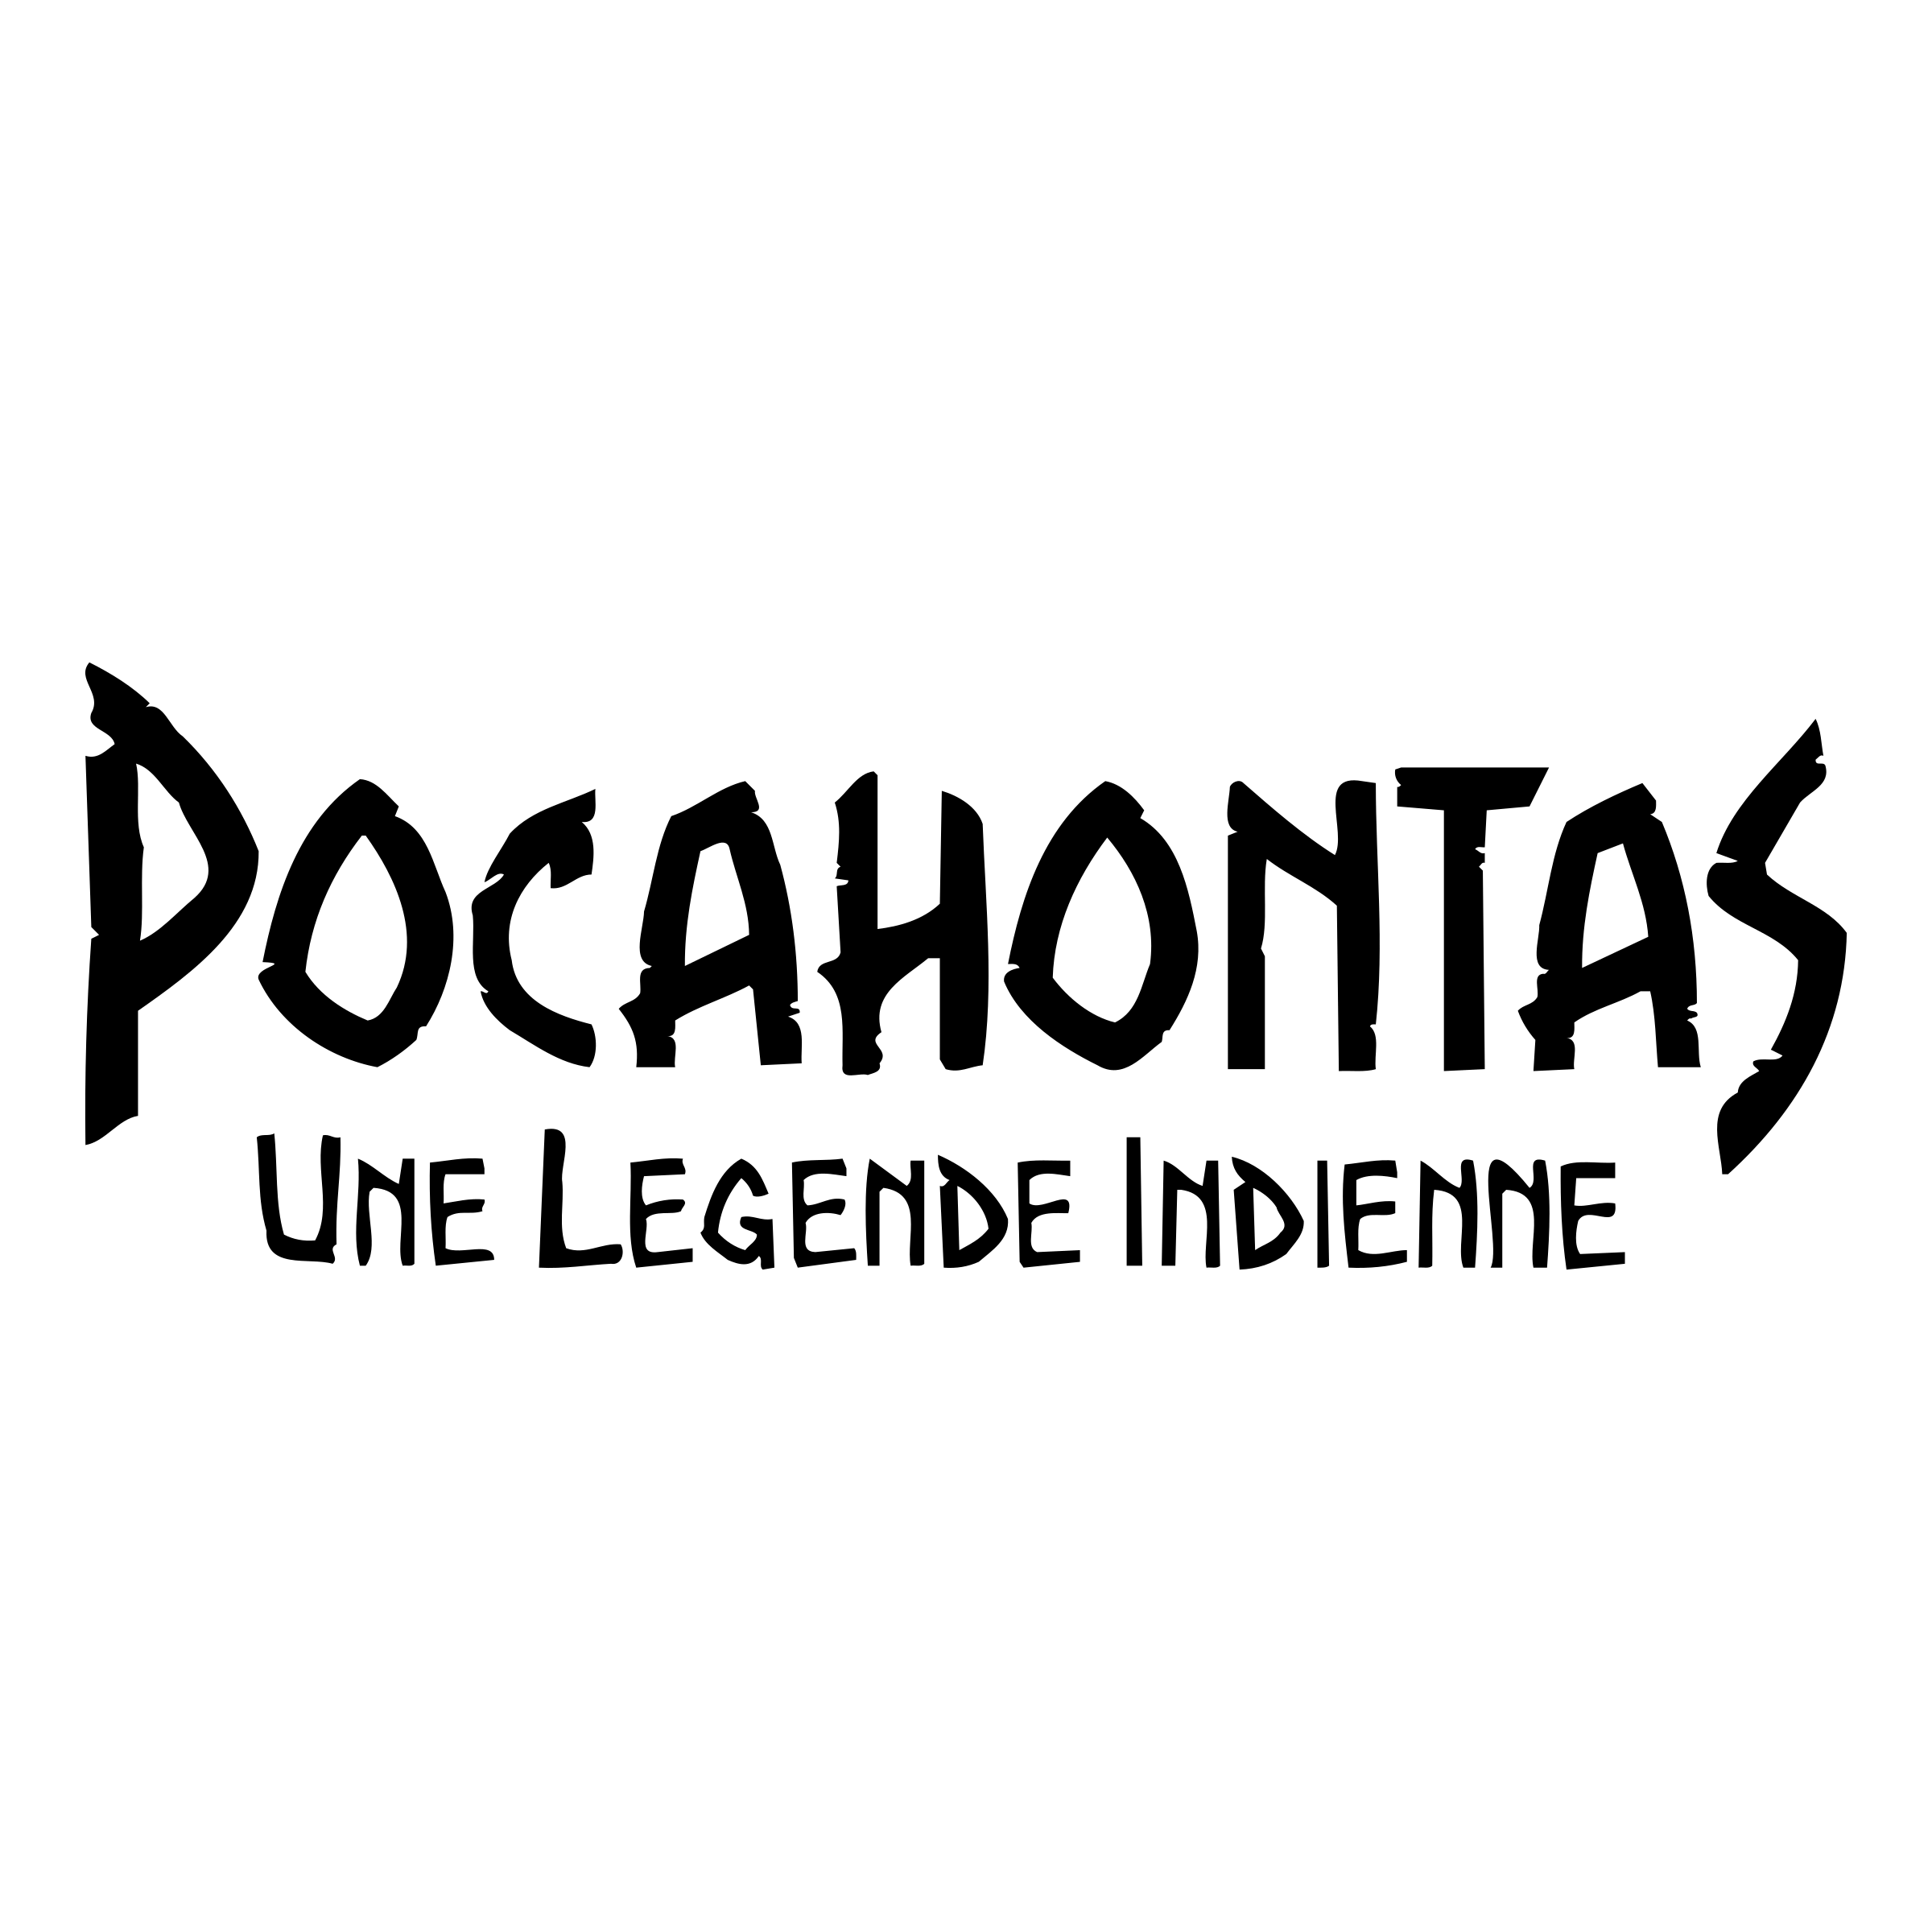 Pocahontas Logo - Pocahontas Logo PNG Transparent & SVG Vector - Freebie Supply